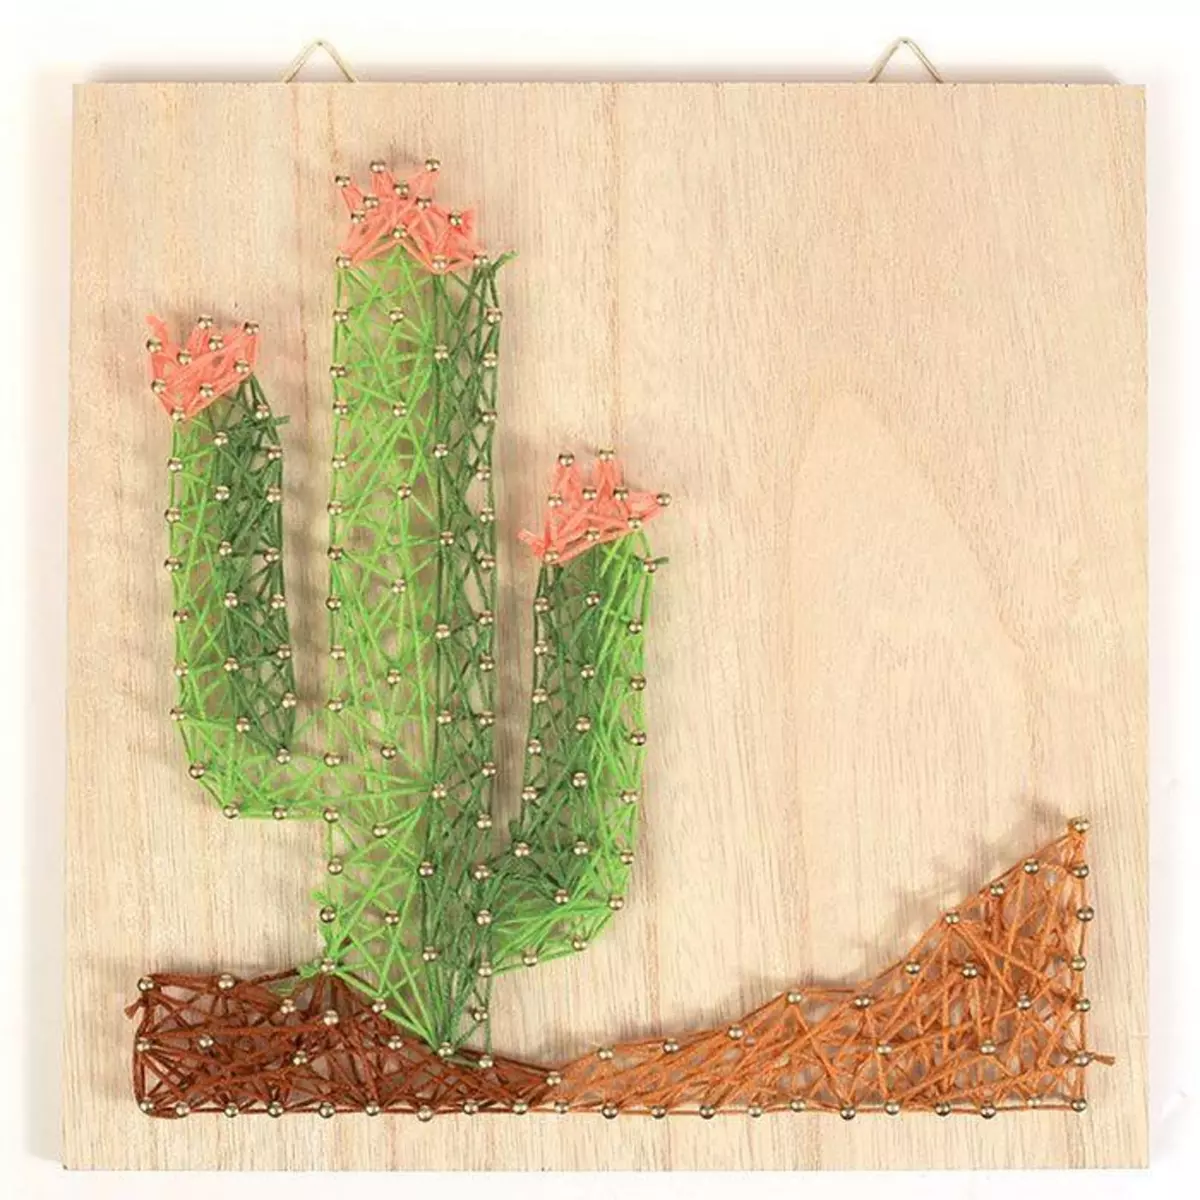 Graine créative Coffret cadre en bois String Art 22 x 22 cm - Cactus